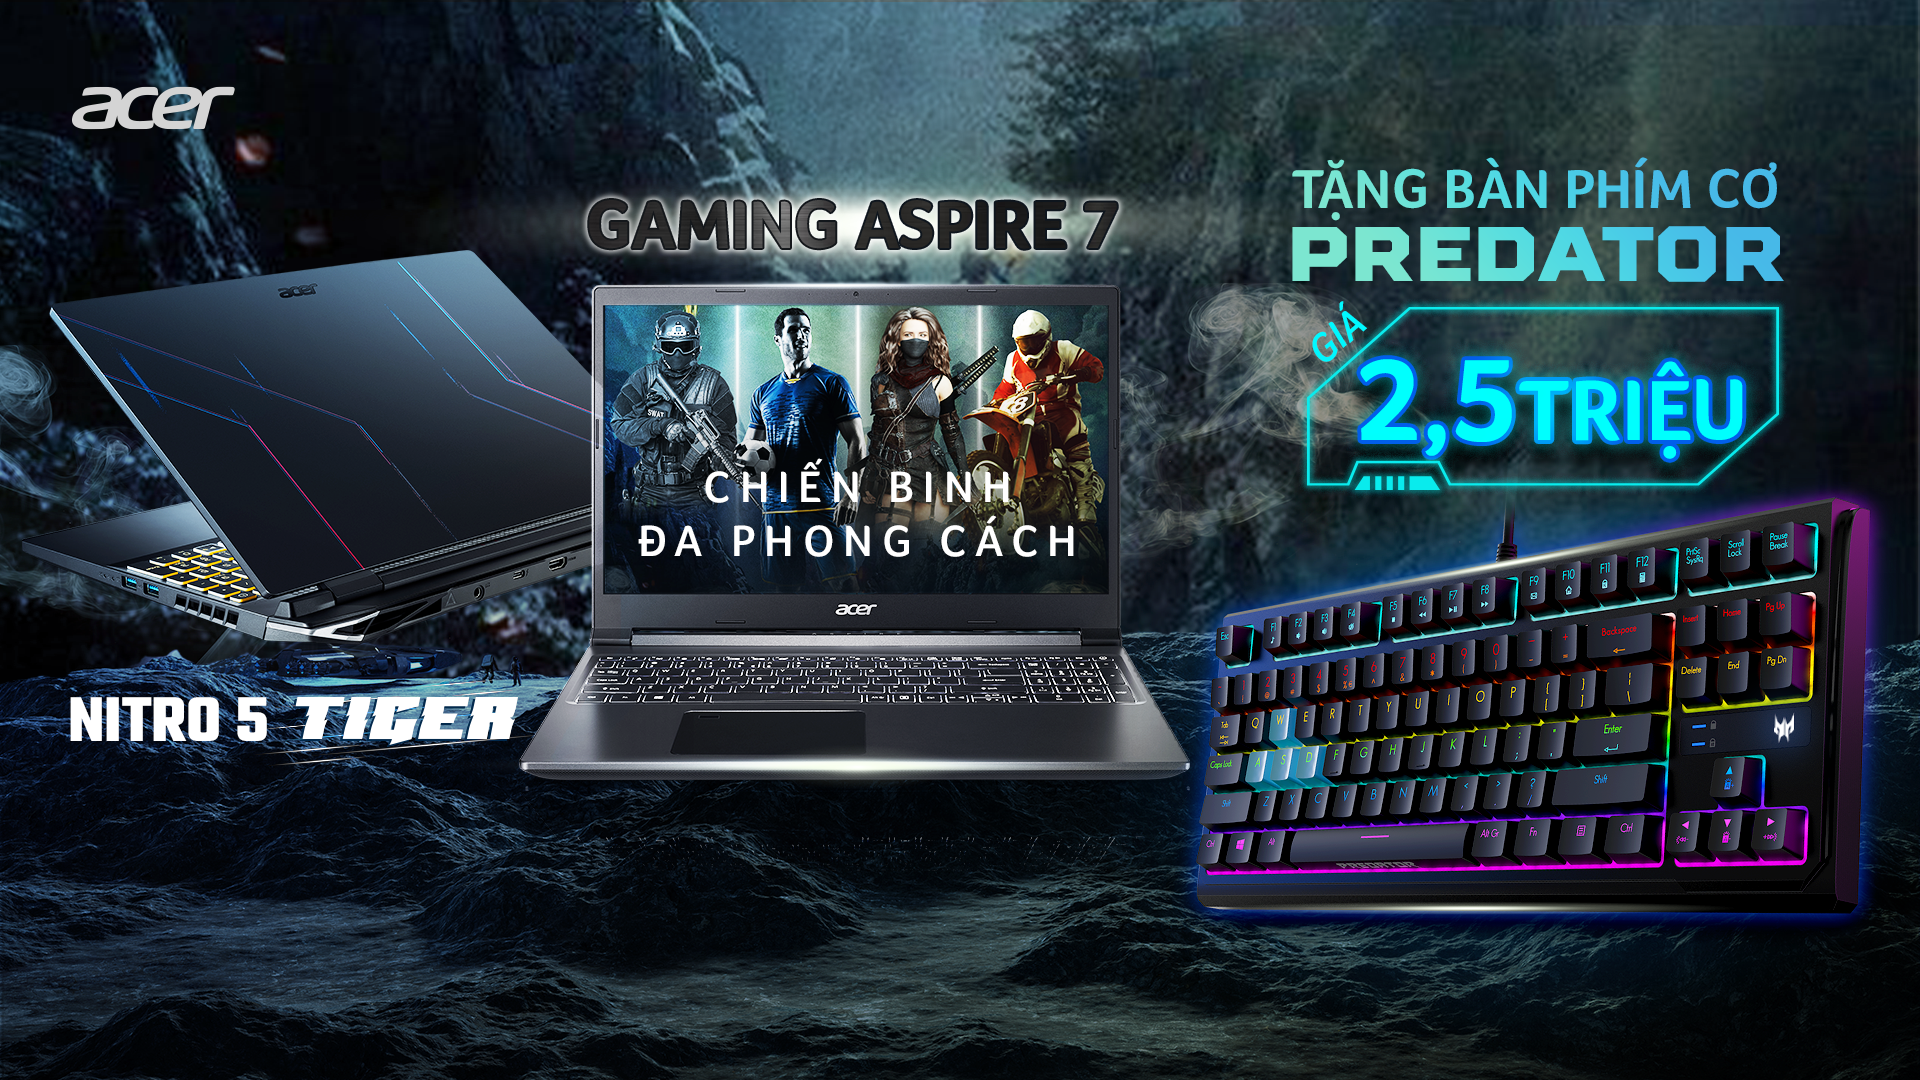 Mua Laptop Gaming Acer Tặng Bàn Phím Cơ Predator - Banner Homepage